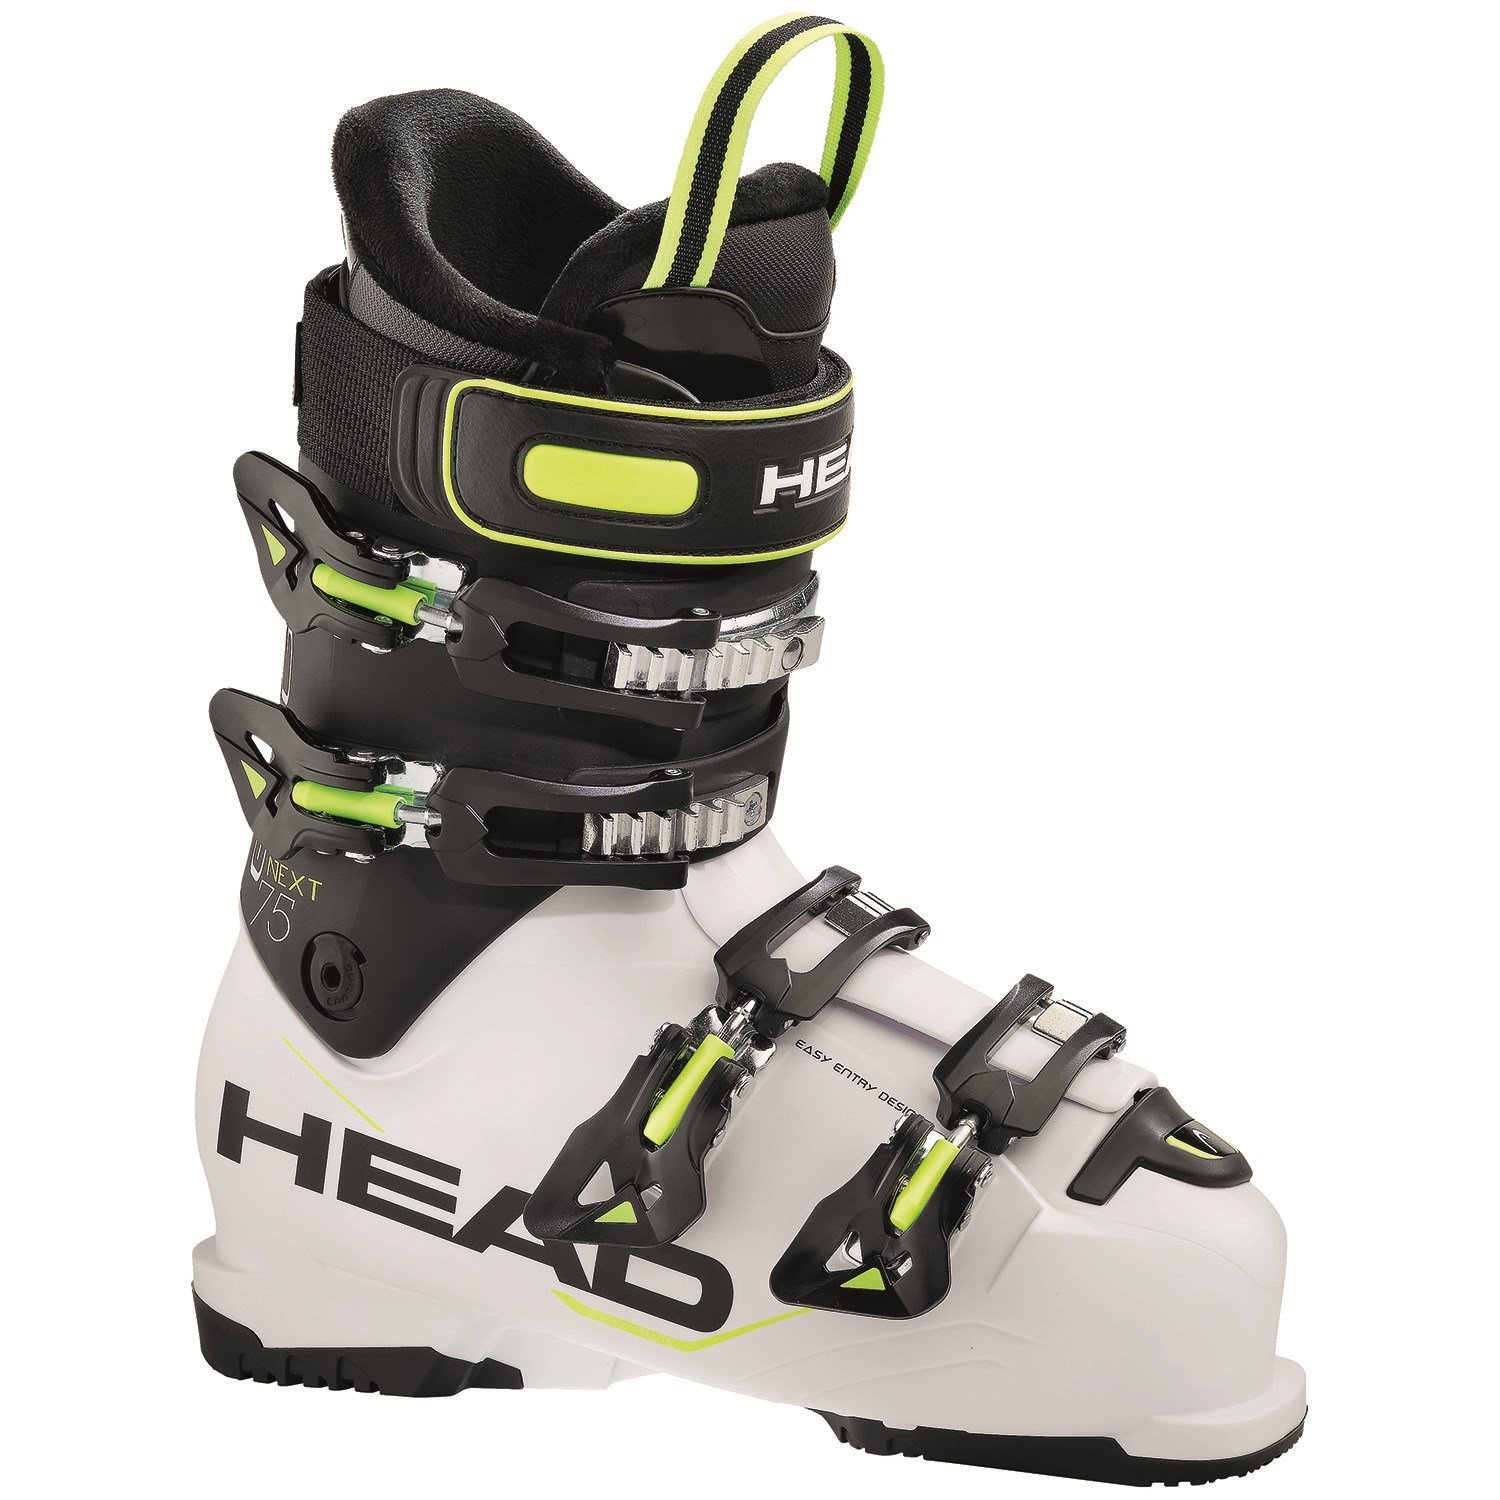 Head Next Edge 75 Ski Boots 2016 | evo